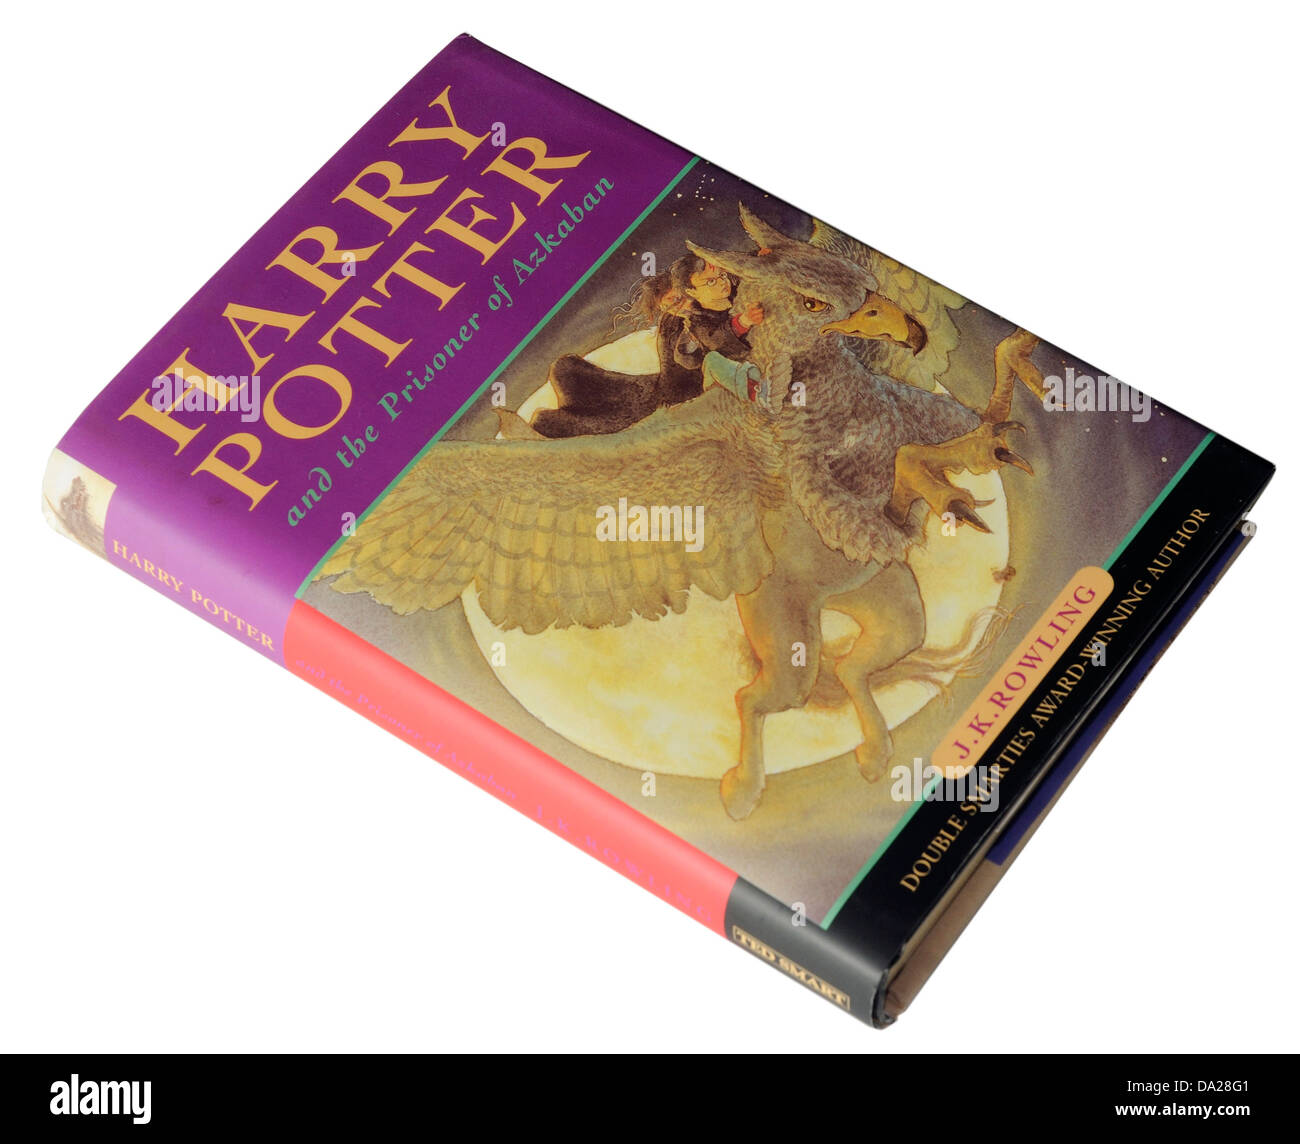 El tercer libro de Harry Potter Harry Potter y el Prisionero de Azkaban Foto de stock